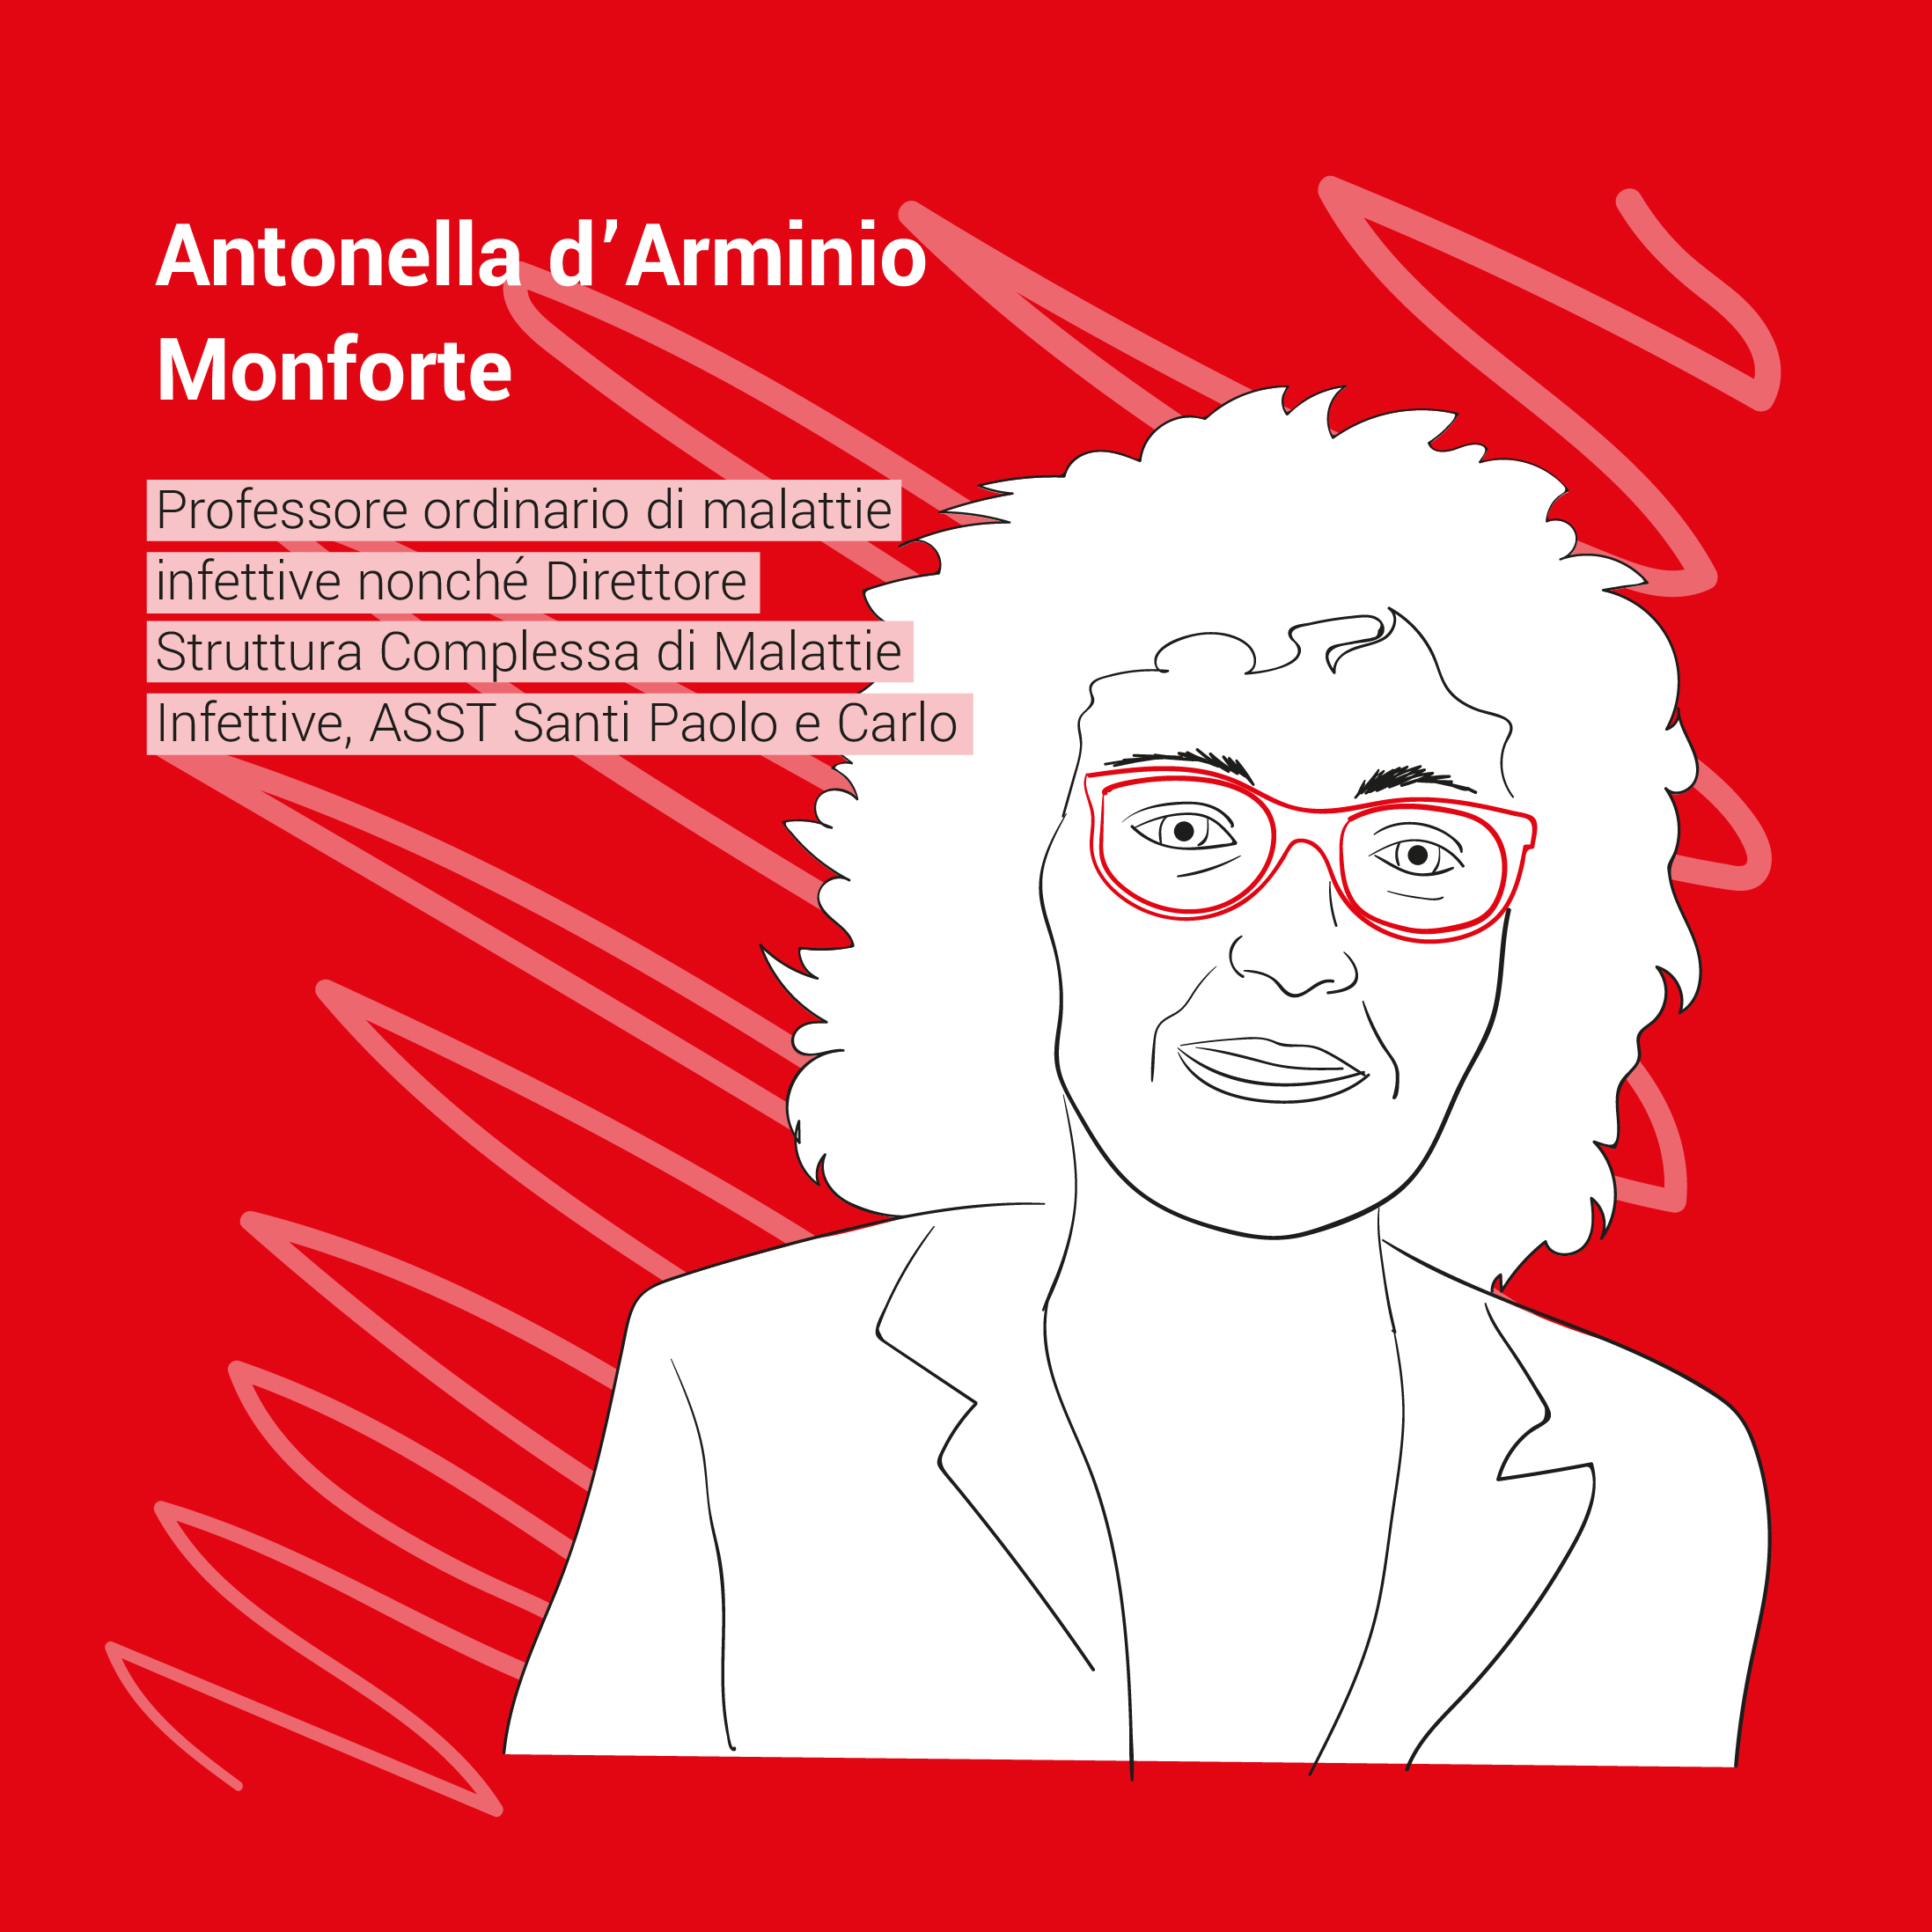 Antonella d'Arminio Monforte